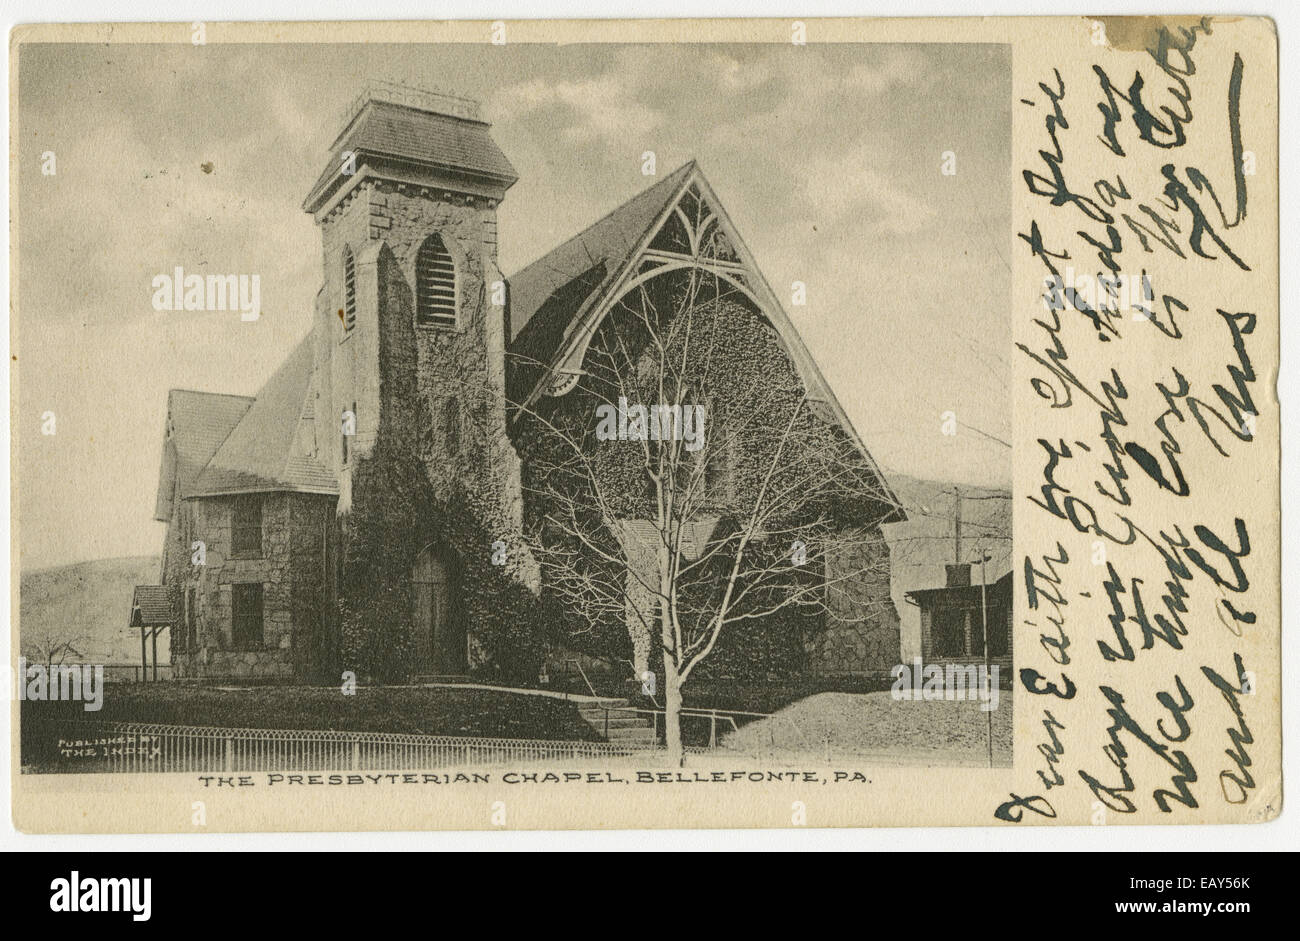 Presbyterianischen Kapelle in Bellefonte, Pennsylvania nach einer Pre-1923 Postkarte von RG-428 Postkarten-Kollektion Stockfoto